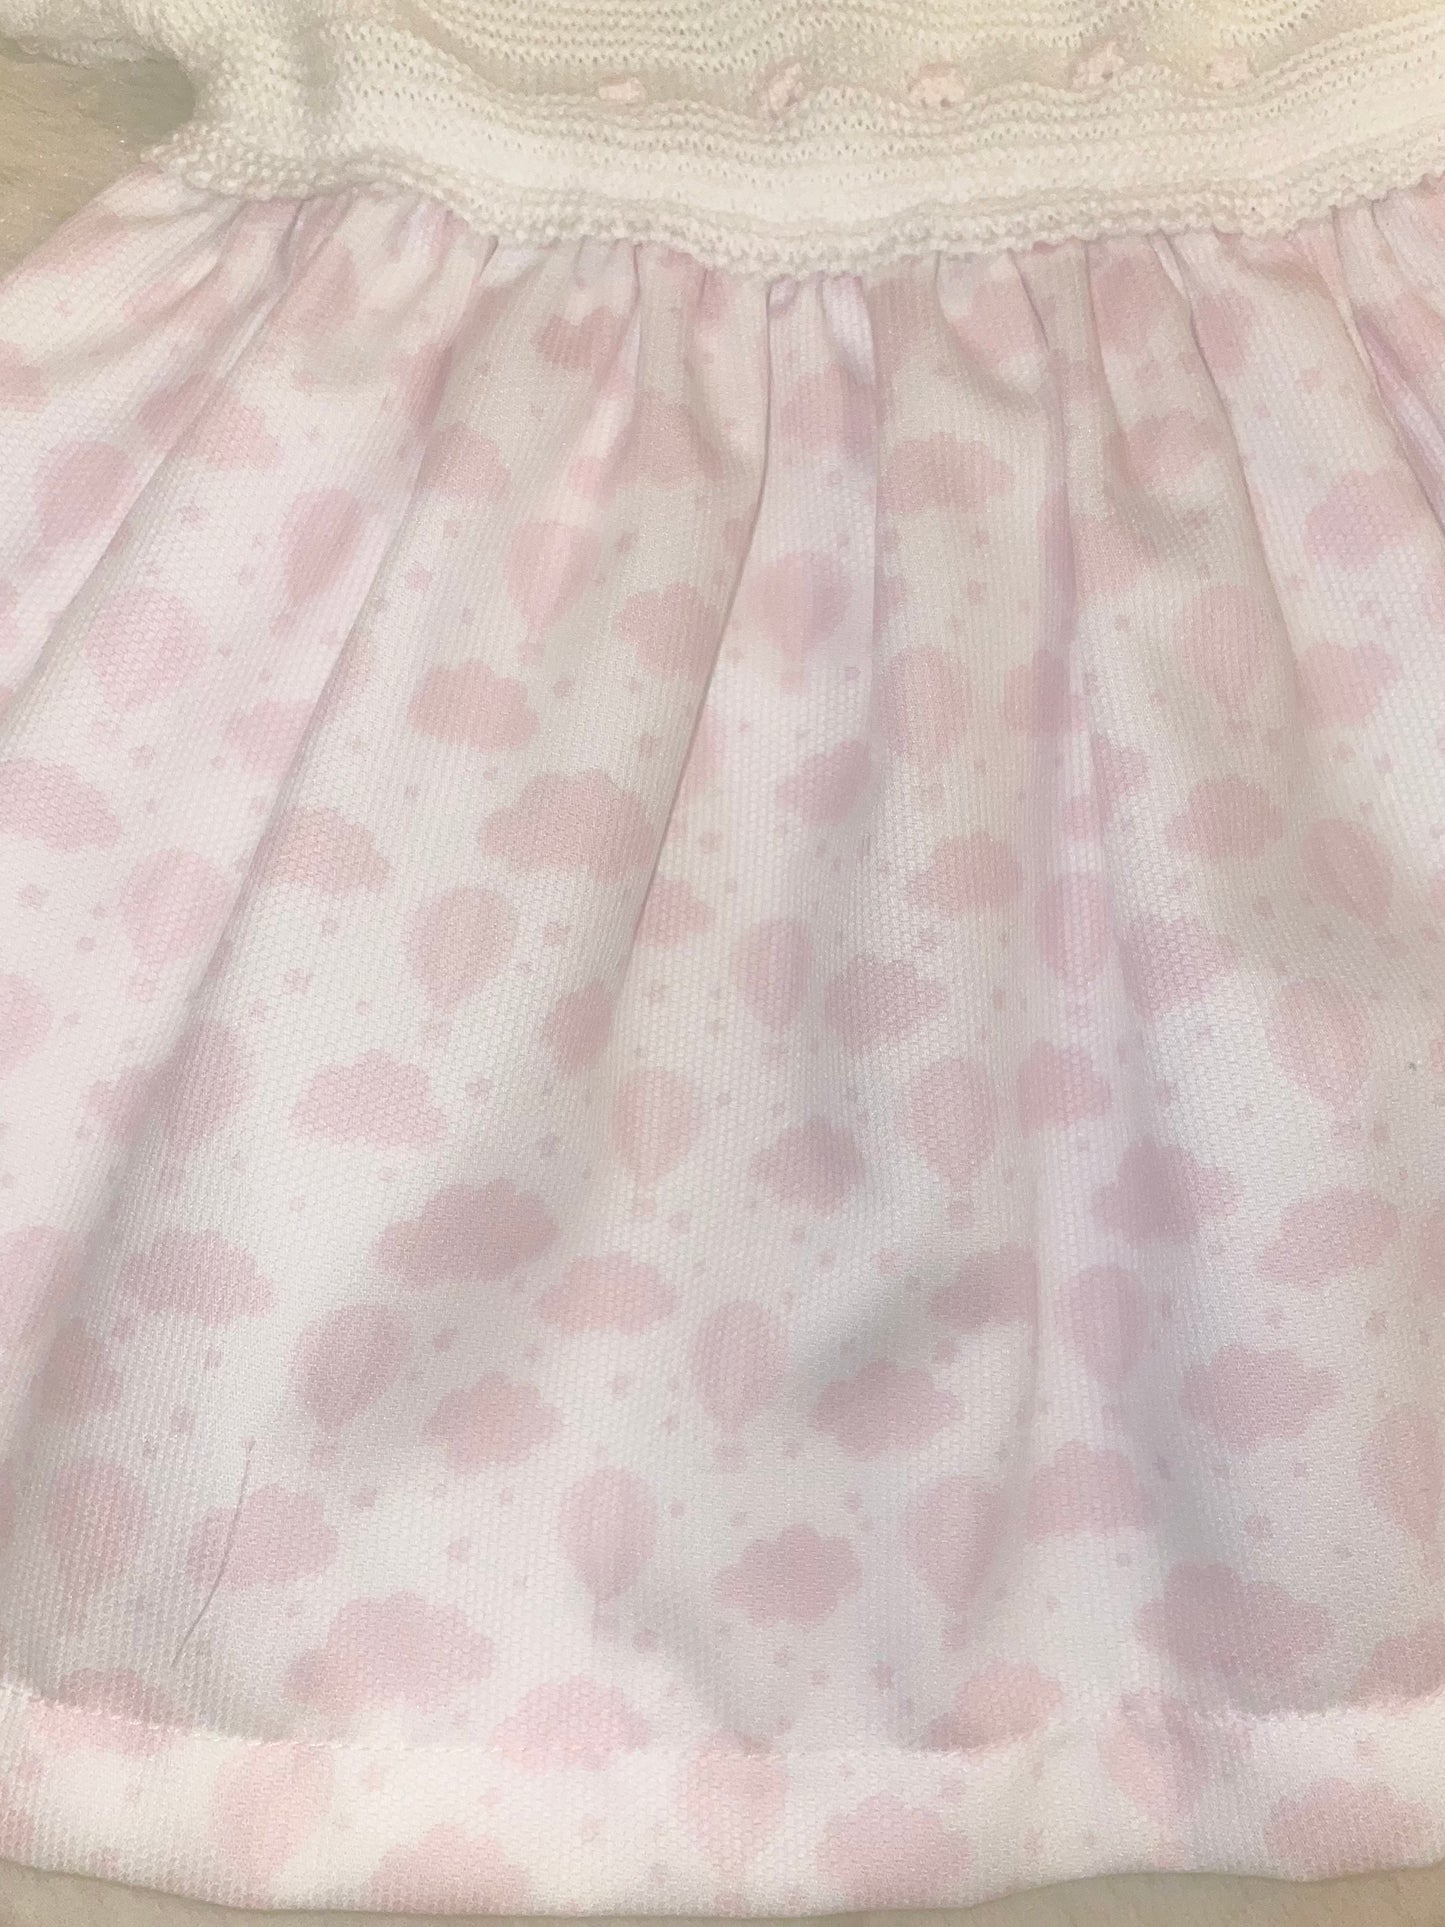 Alber Confecciones White & Pink Spanish Knit/Cotton Dress